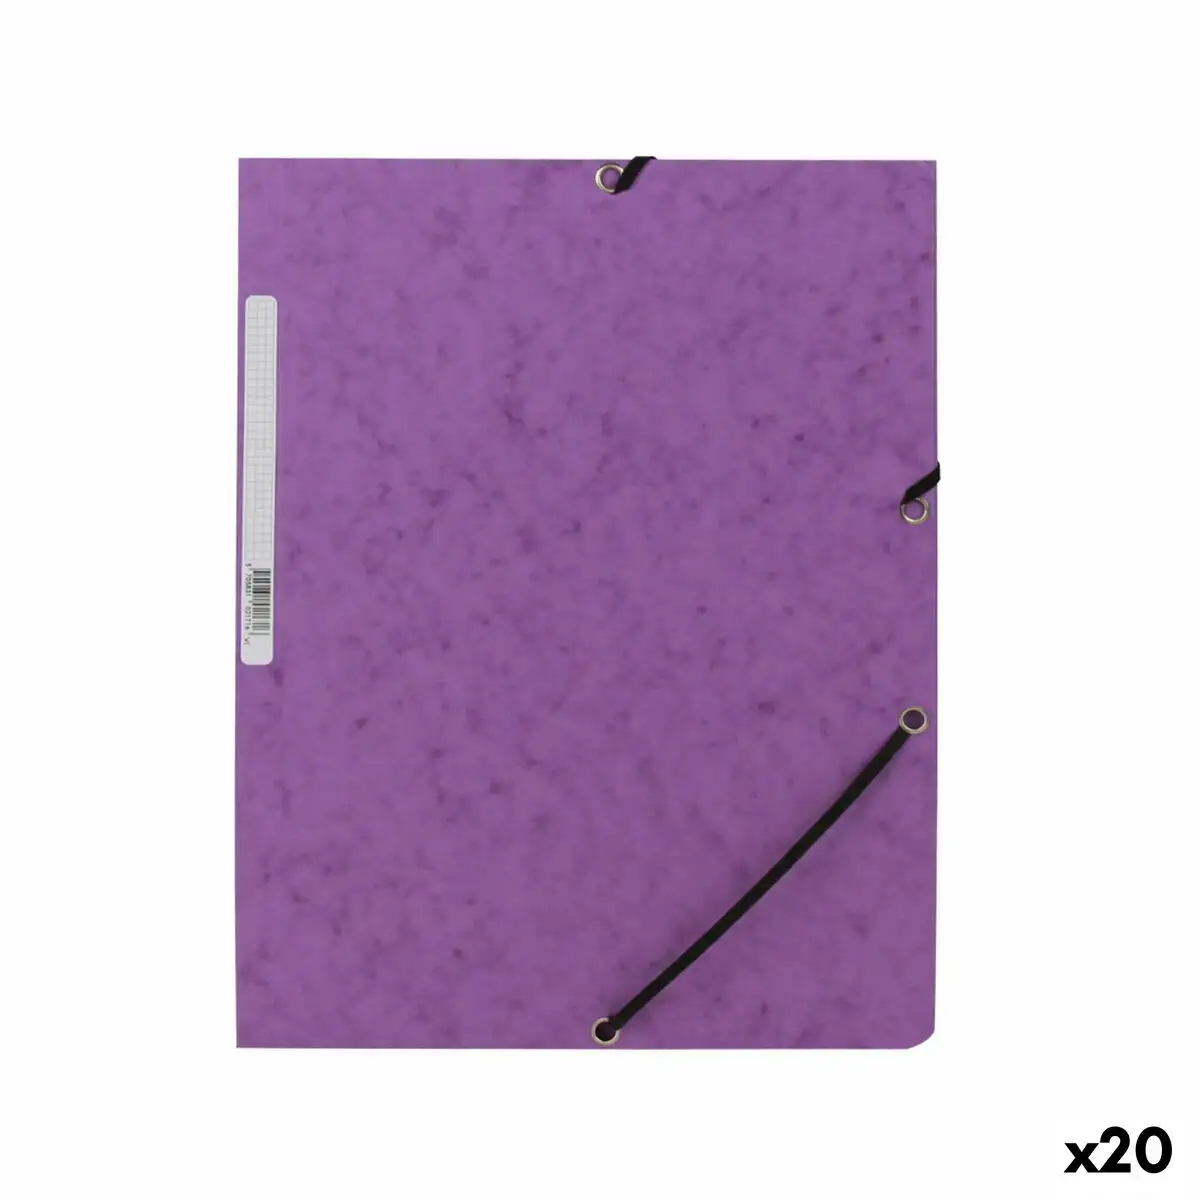 Dossier mariola violet 34 x 25 cm din a4 20 unites _7464. DIAYTAR SENEGAL - L'Art du Shopping Distinctif. Naviguez à travers notre gamme soigneusement sélectionnée et choisissez des produits qui définissent votre mode de vie.